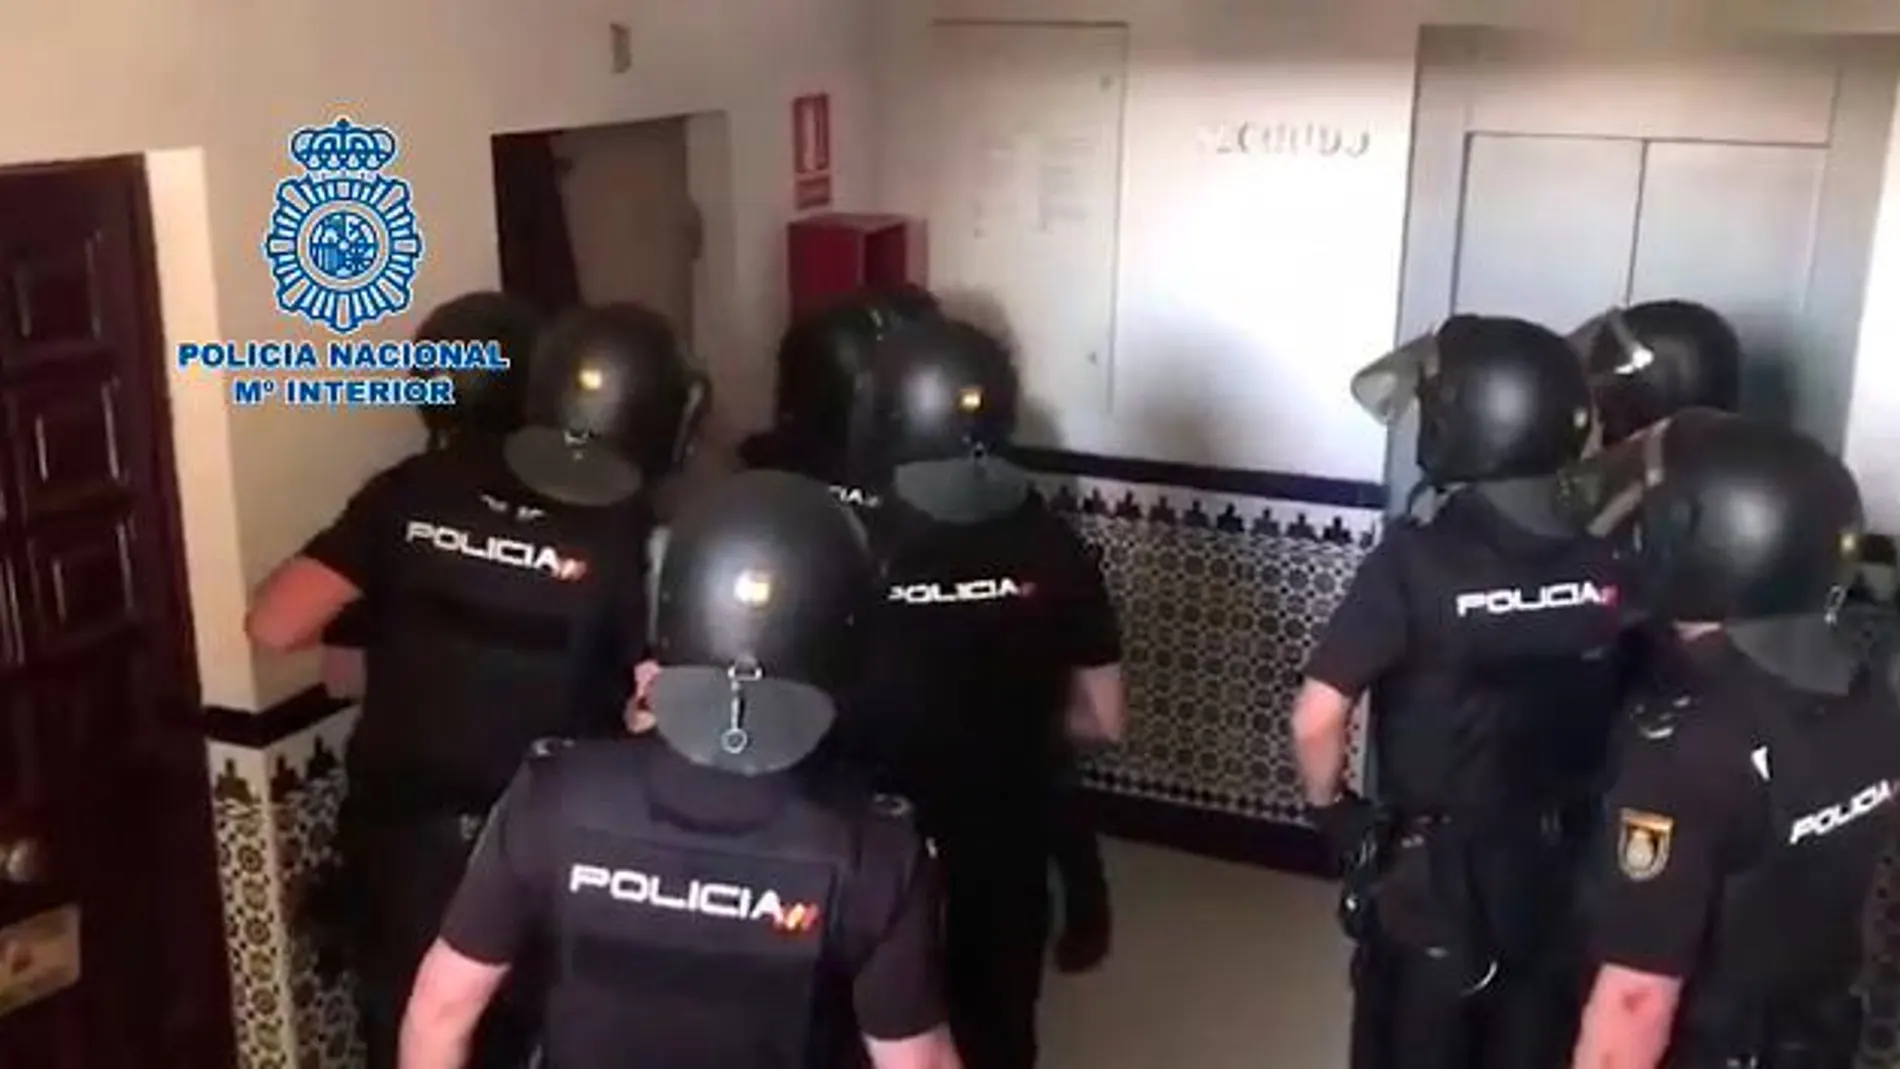 Imagen de la Policía Nacional en el edificio donde se atrincheró el detenido